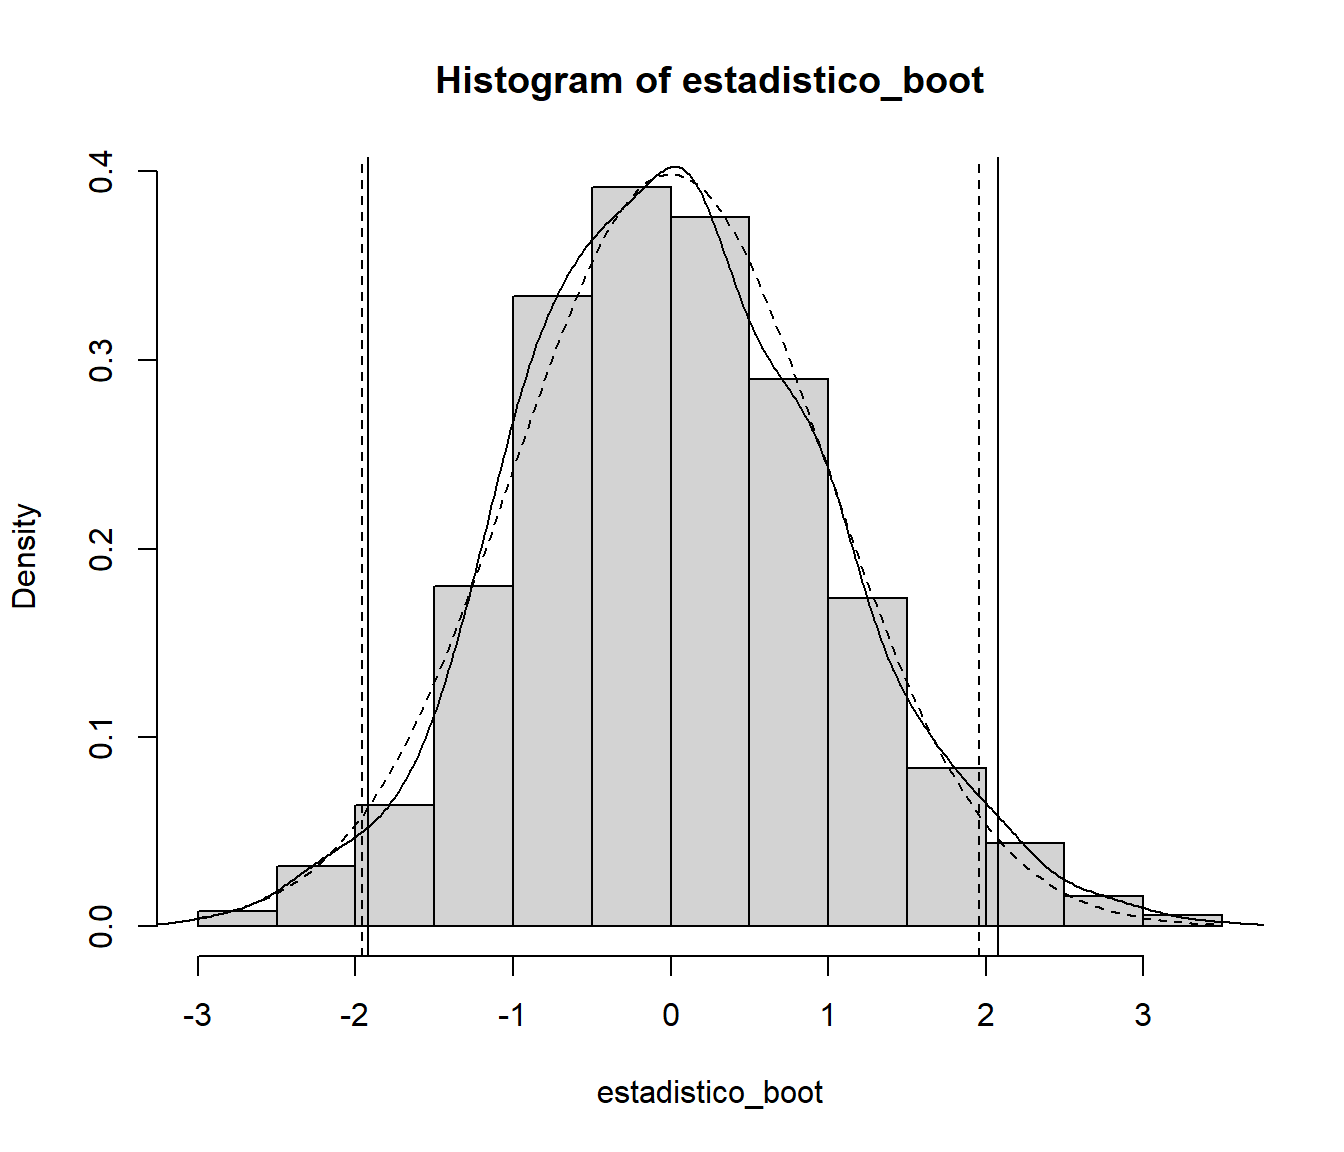 Distribución del estadístico boostrap y aproximaciones de los cuantiles. Con línea discontinua se muestra la distribución normal asintótica.